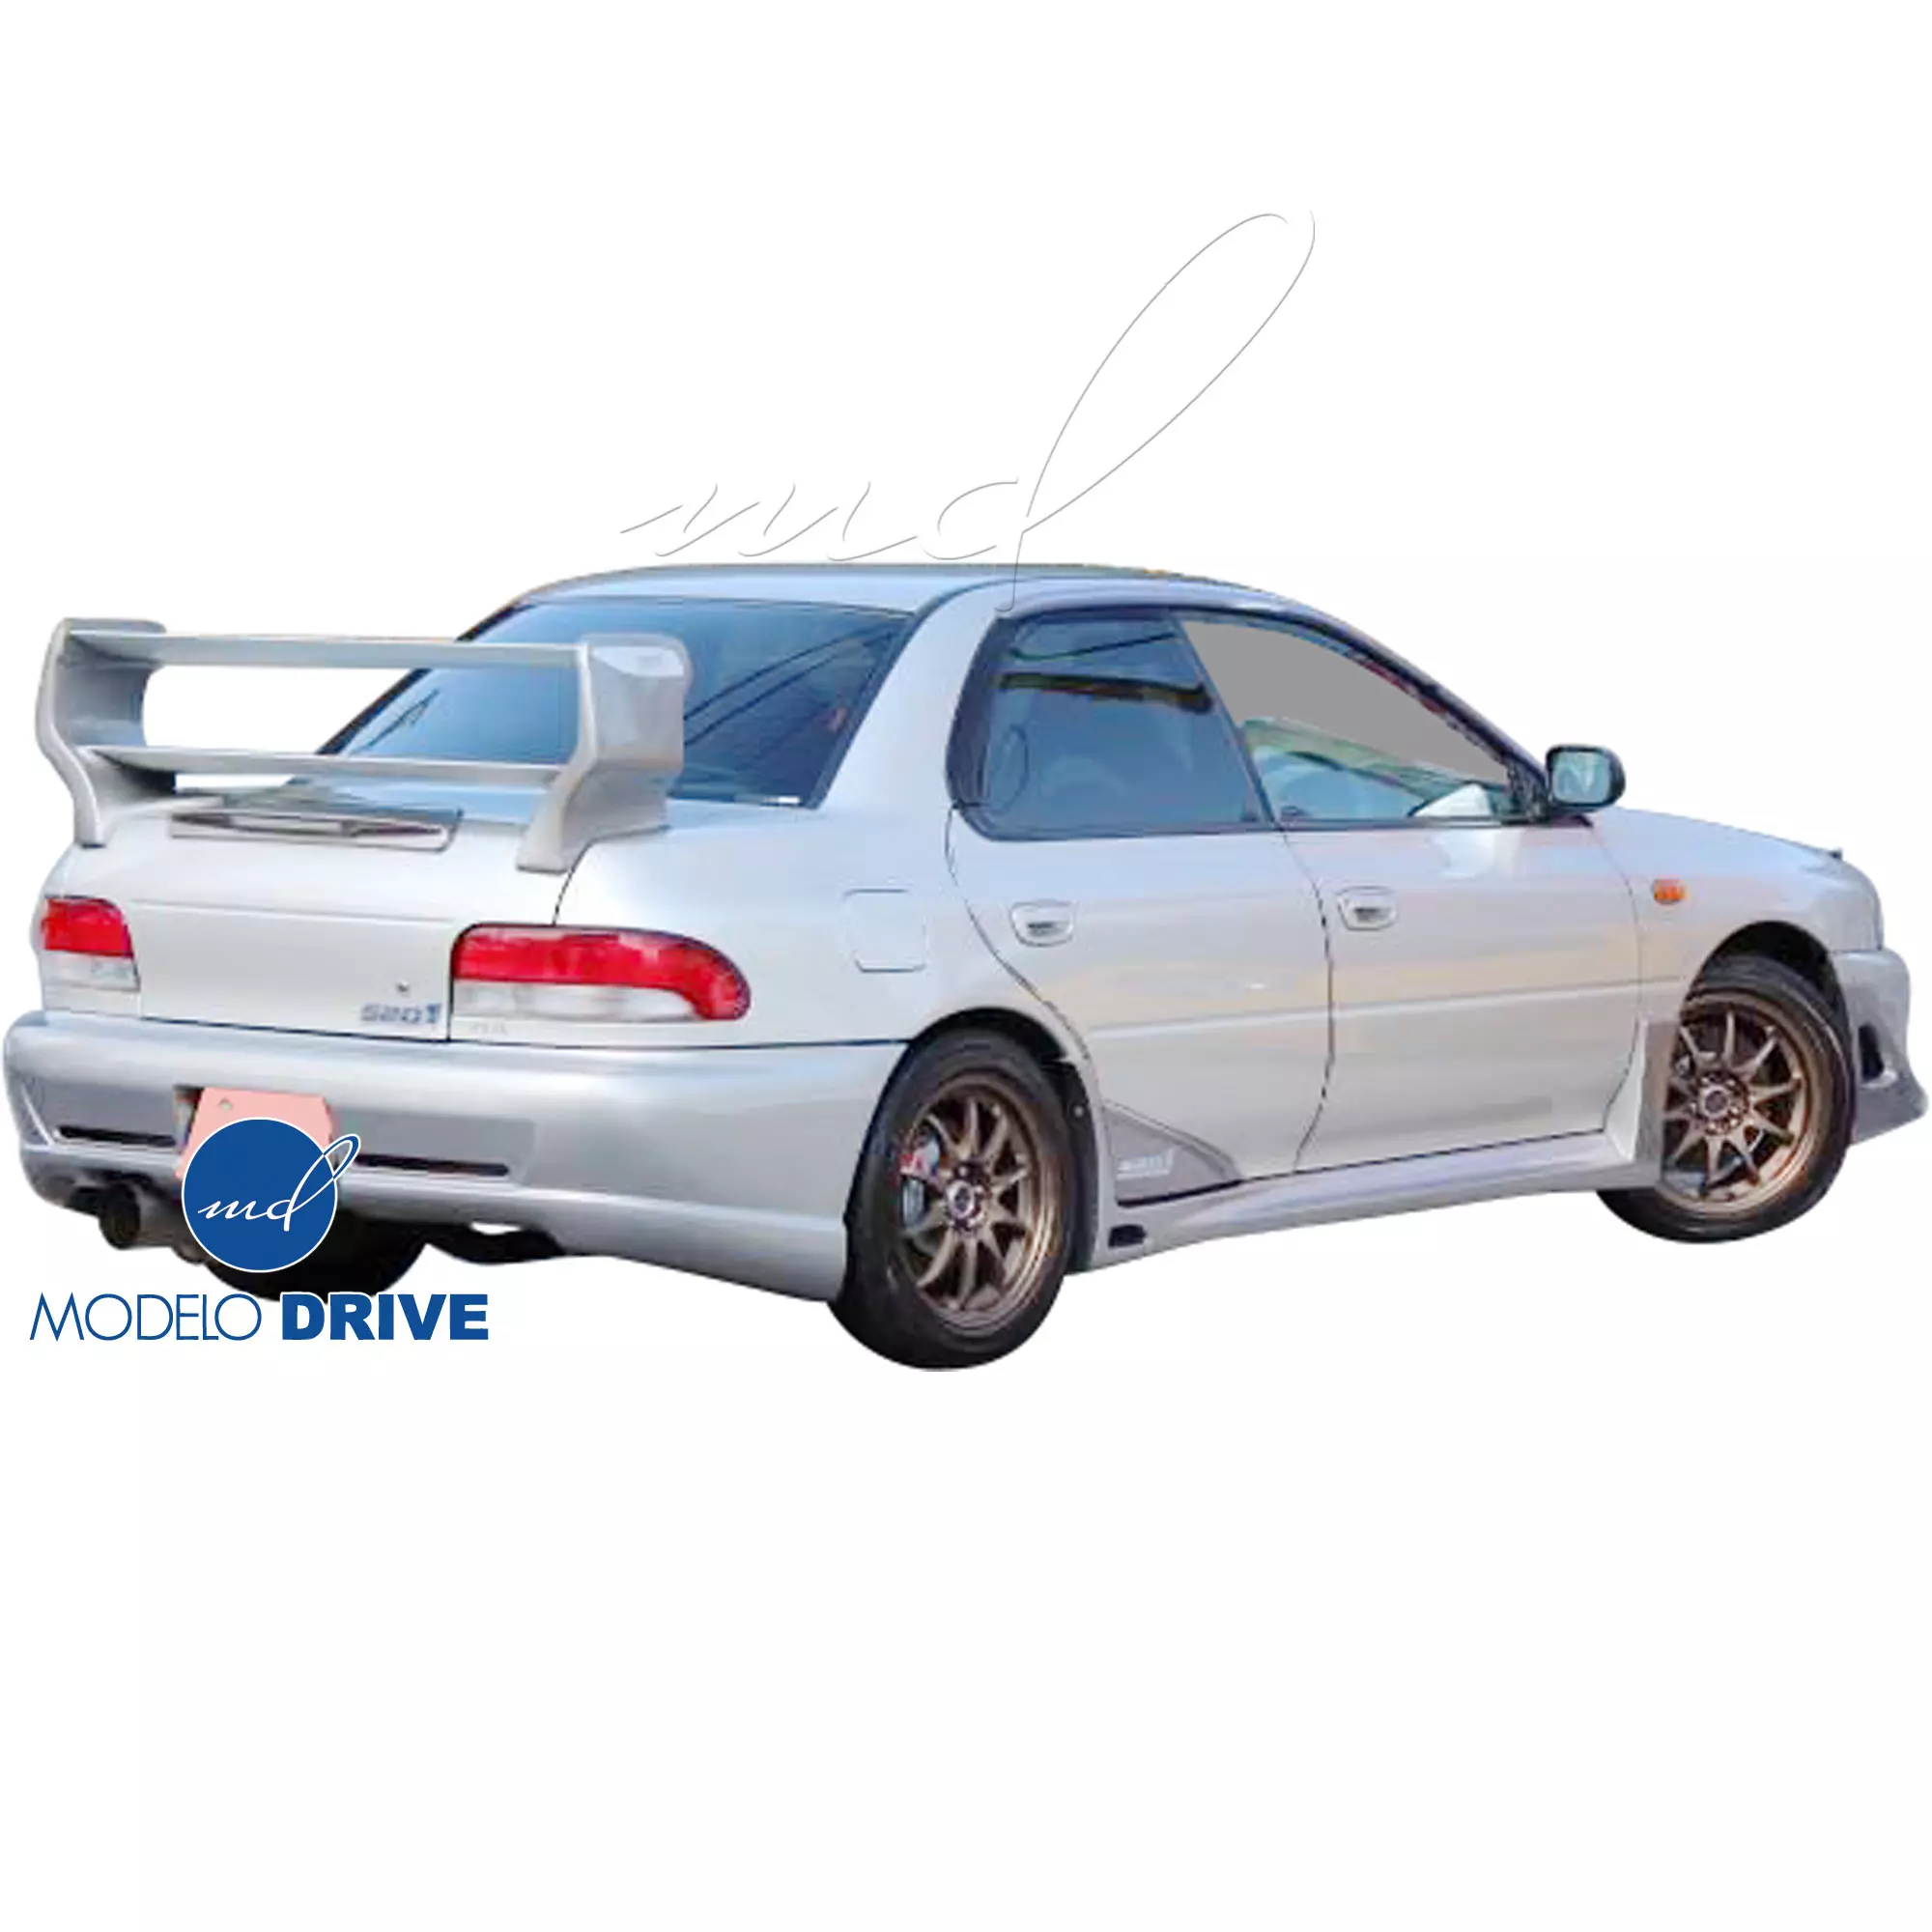 ModeloDrive FRP S201 Look Spoiler Wing > Subaru Impreza (GC8) 1993-2001 > 2/4dr - Image 5